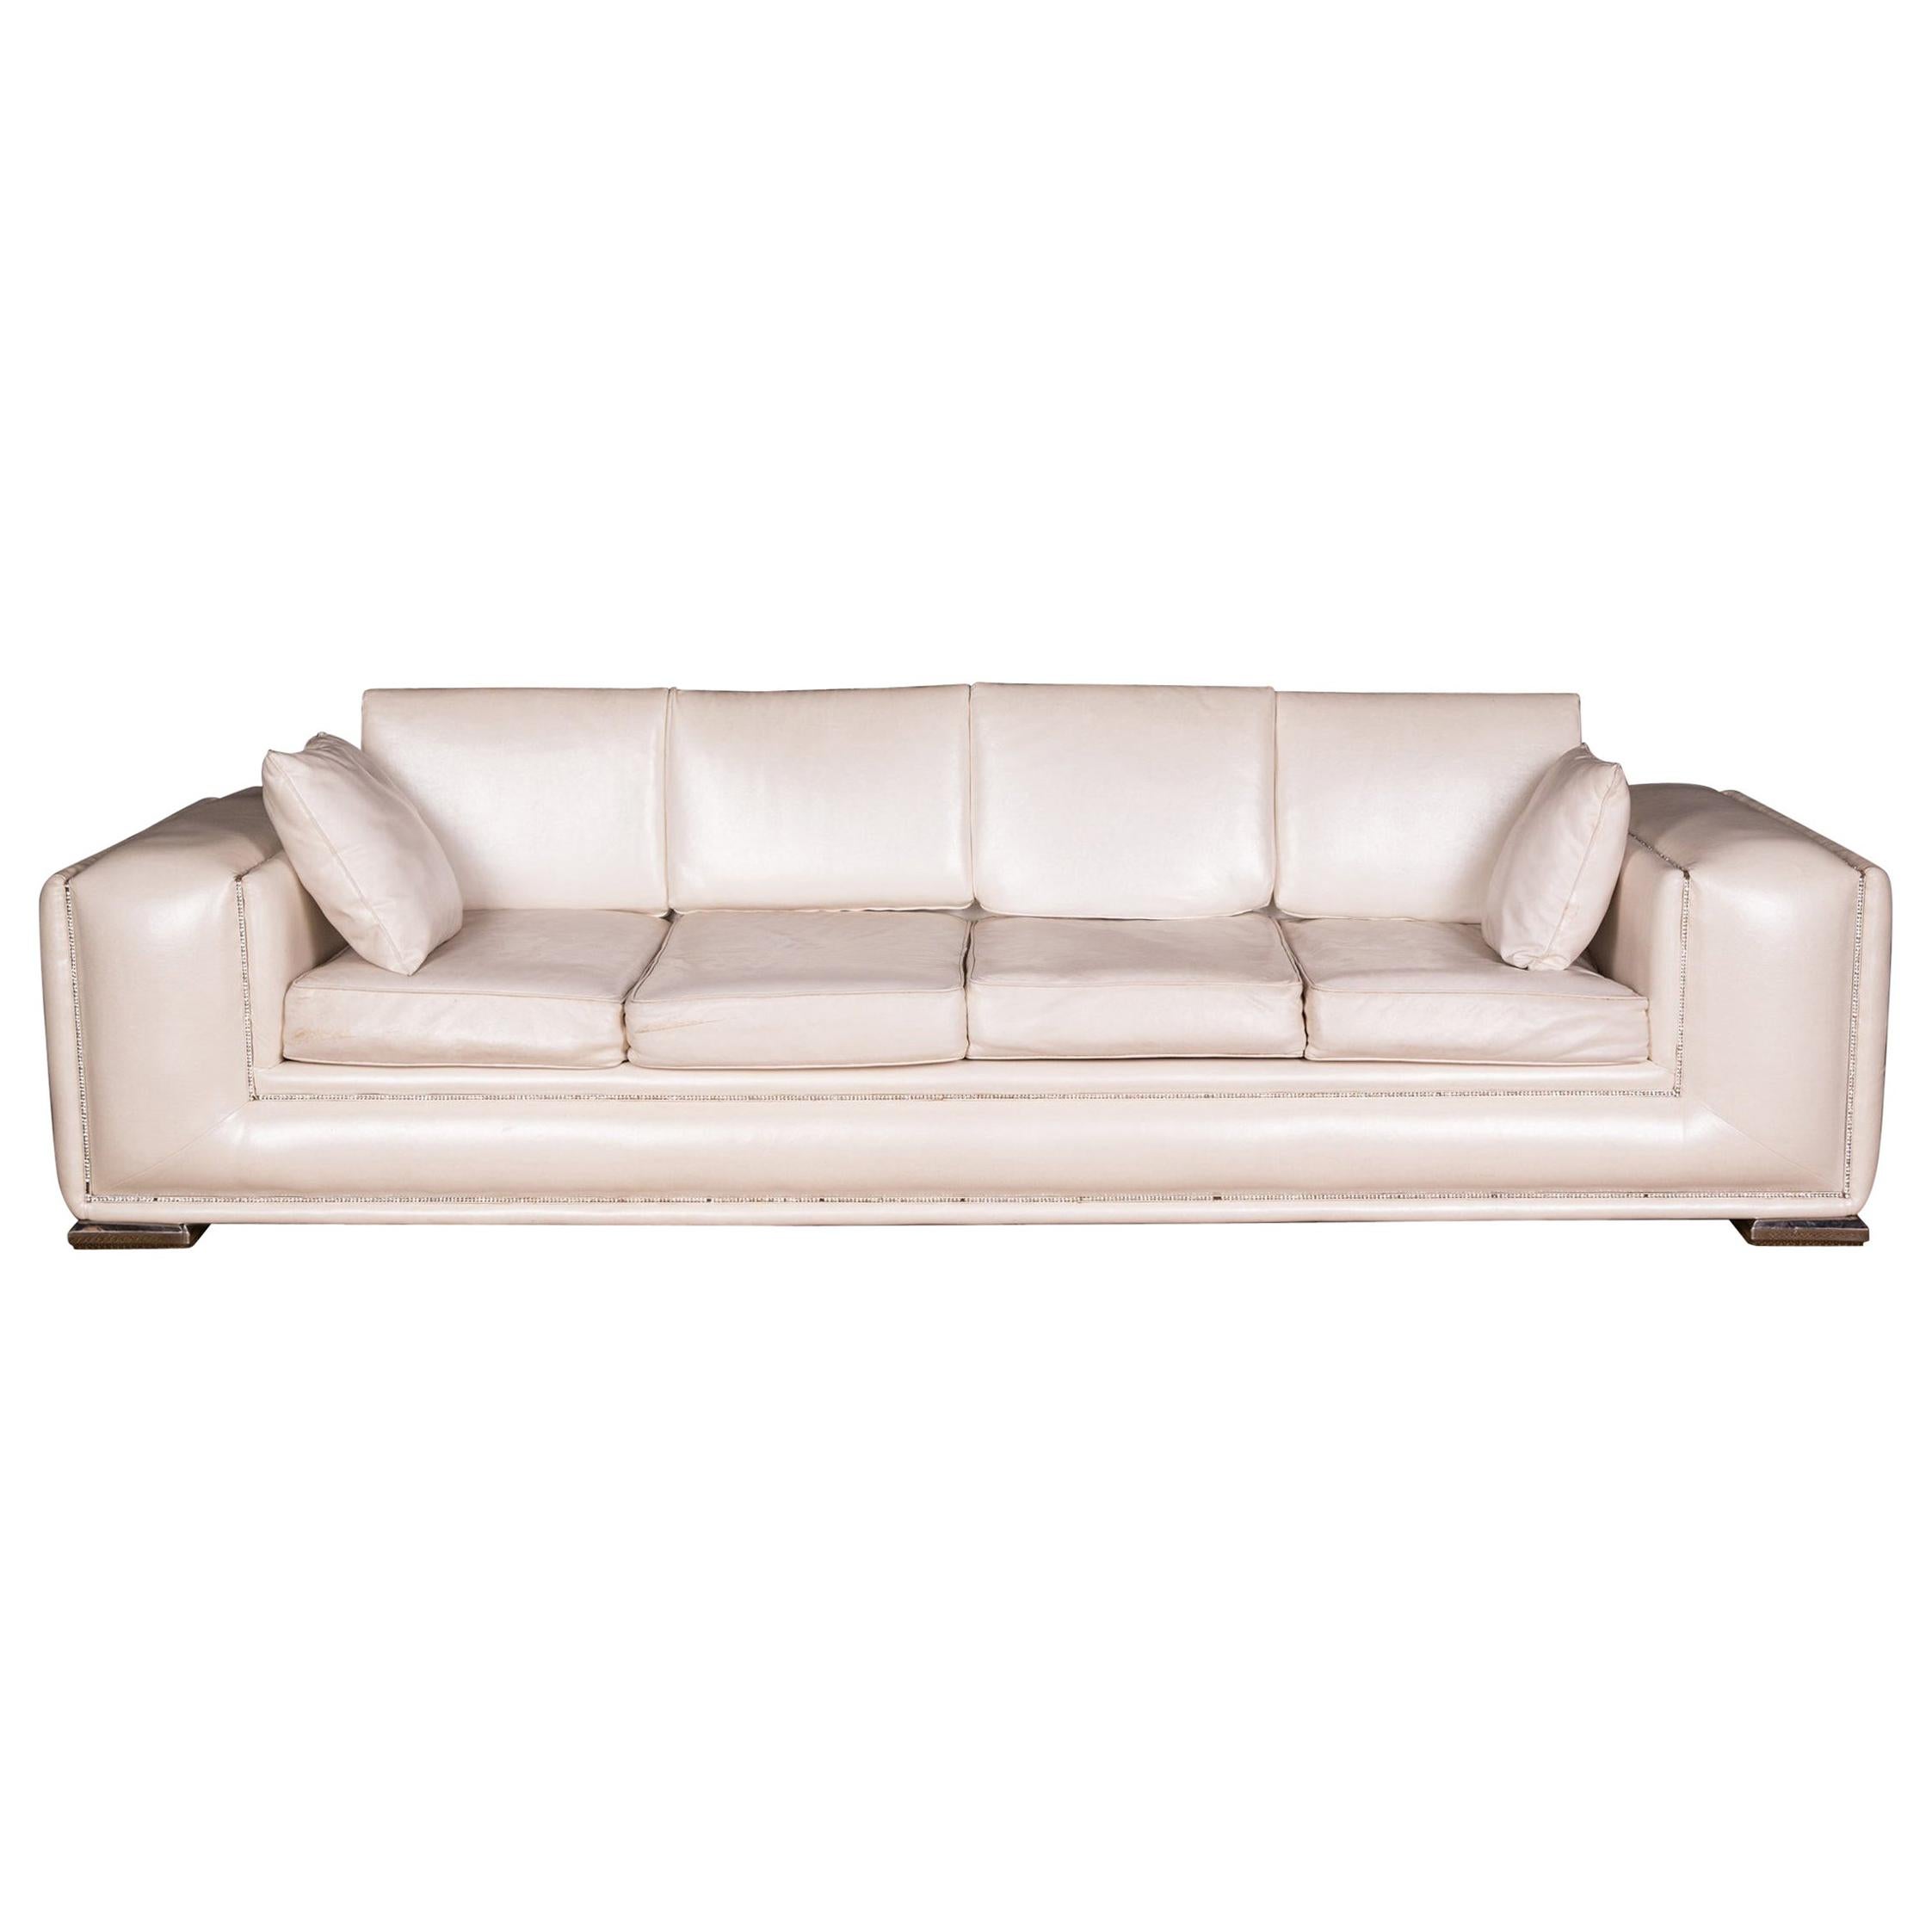 Designer-Sofa mit vier Sitzen und Swarovski-Steinen und Strasssteinen